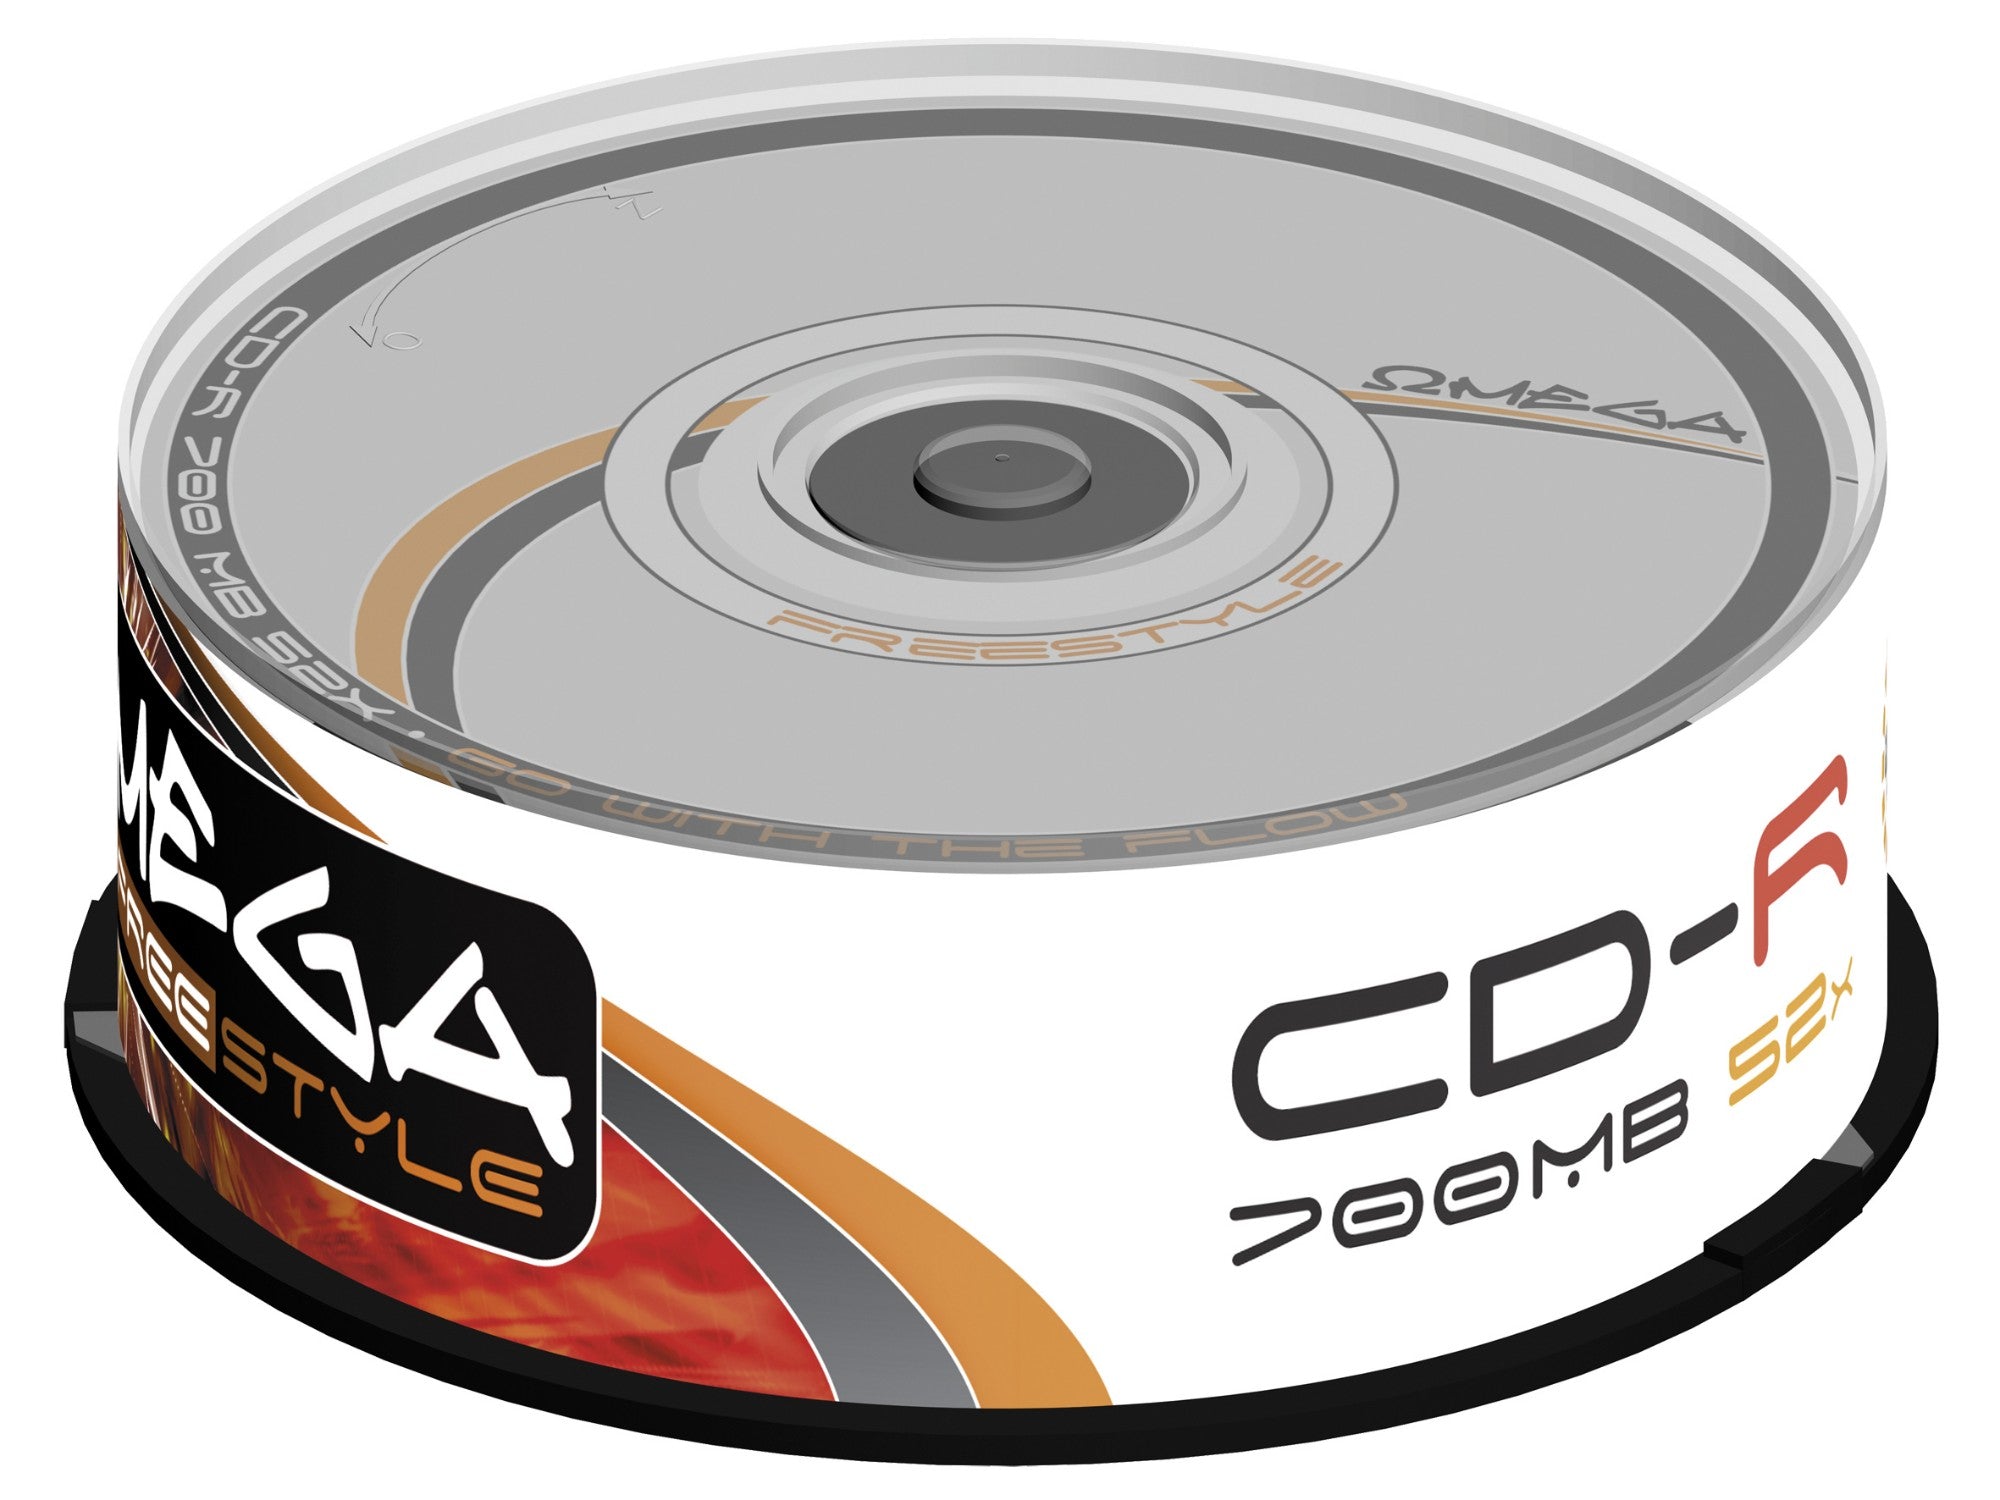 CD-R (x25 pack)